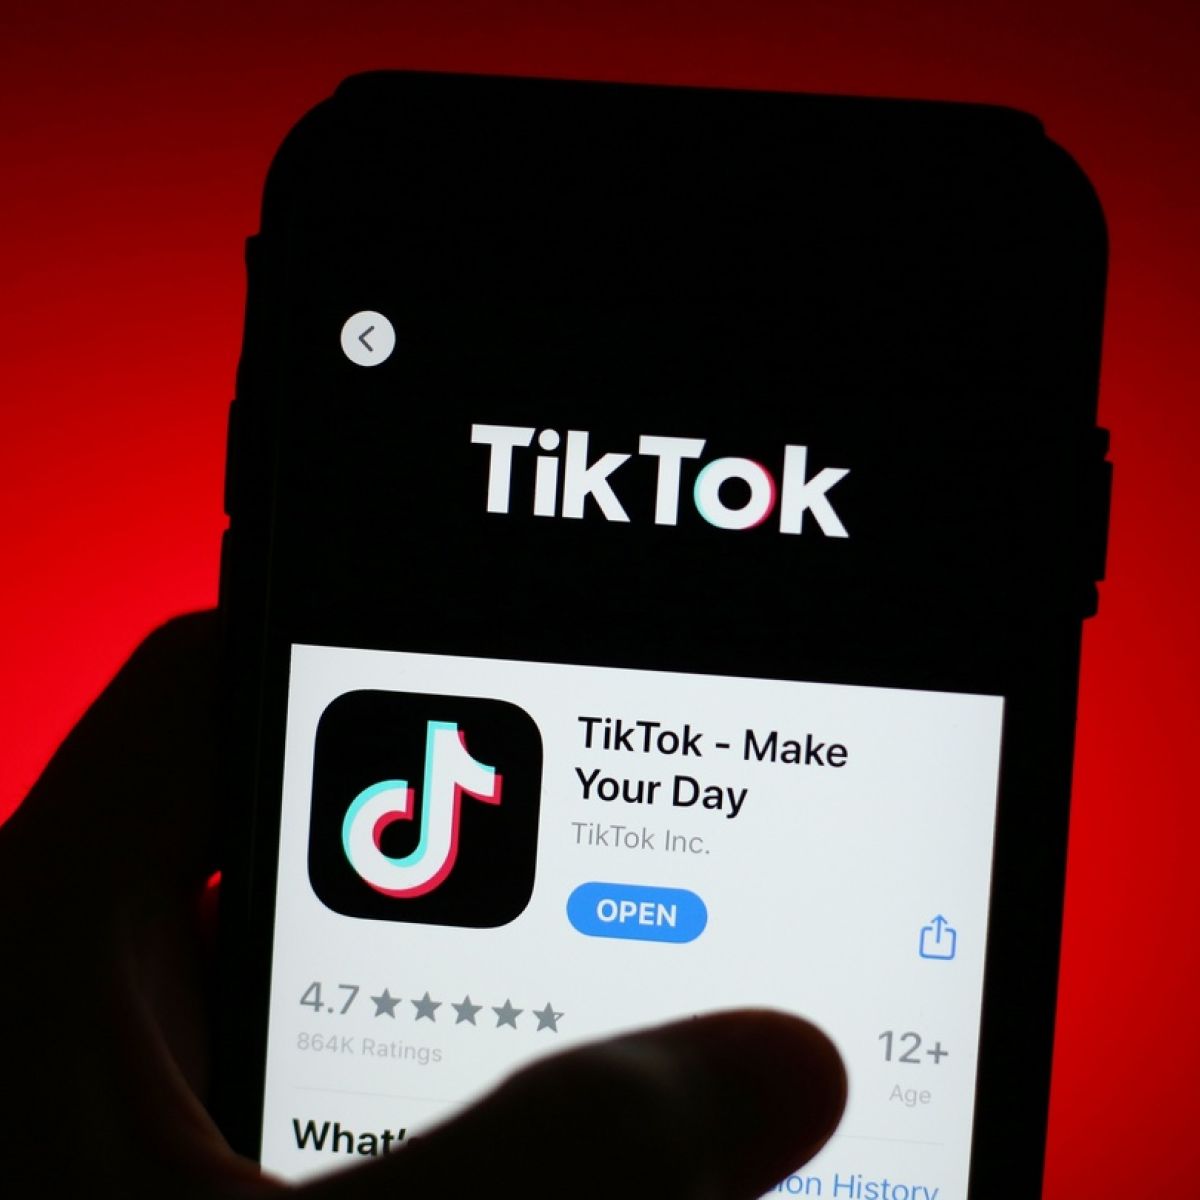 Tiktok Owner Bytedance Increased Revenues 111 Last Year